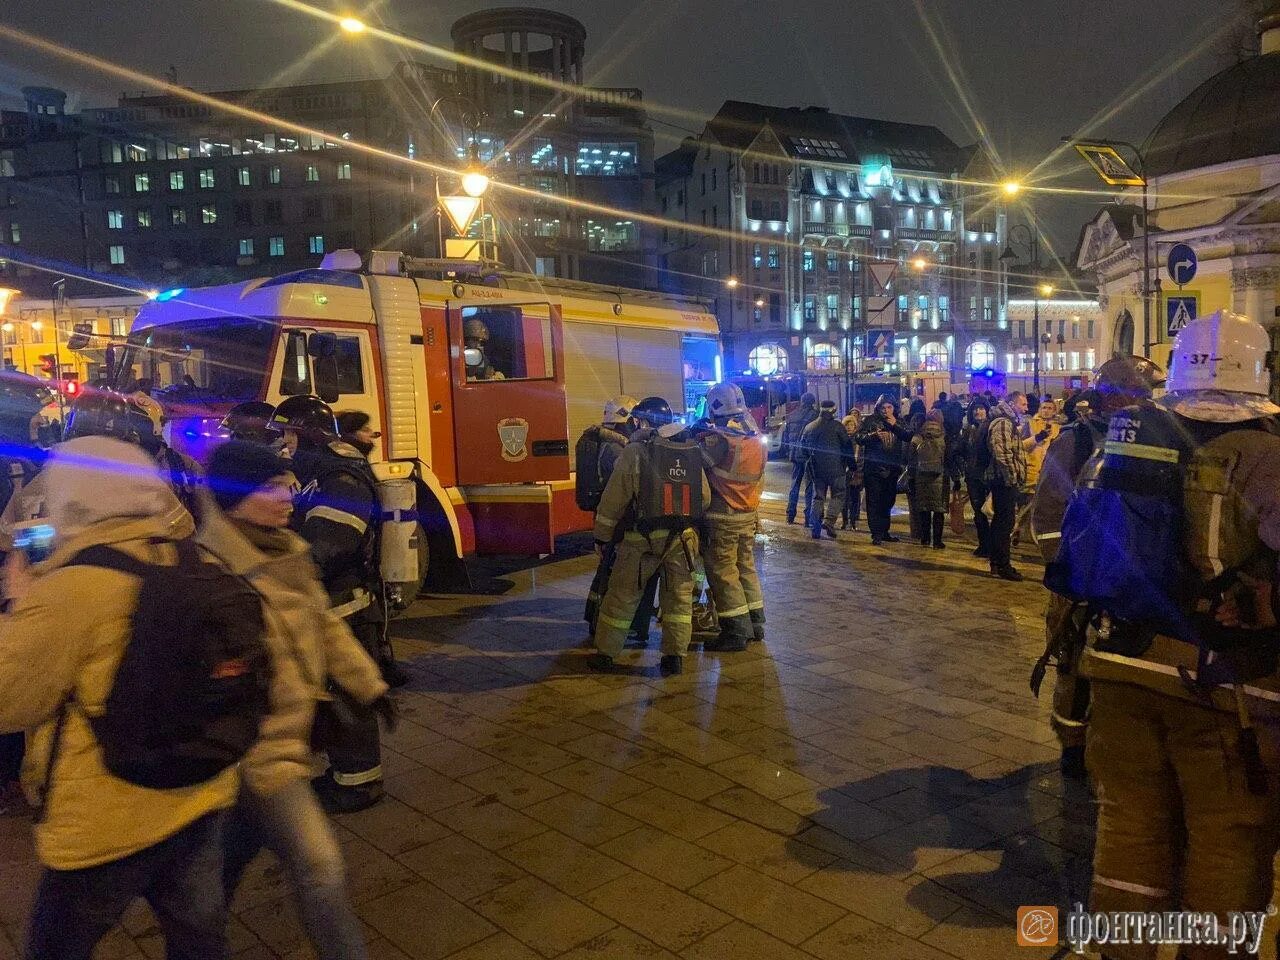 Санкт петербург что случилось сегодня. Авария в метро Санкт Петербург теракт. Происшествие в метро СПБ. Взрыв в Санкт-Петербурге сейчас.